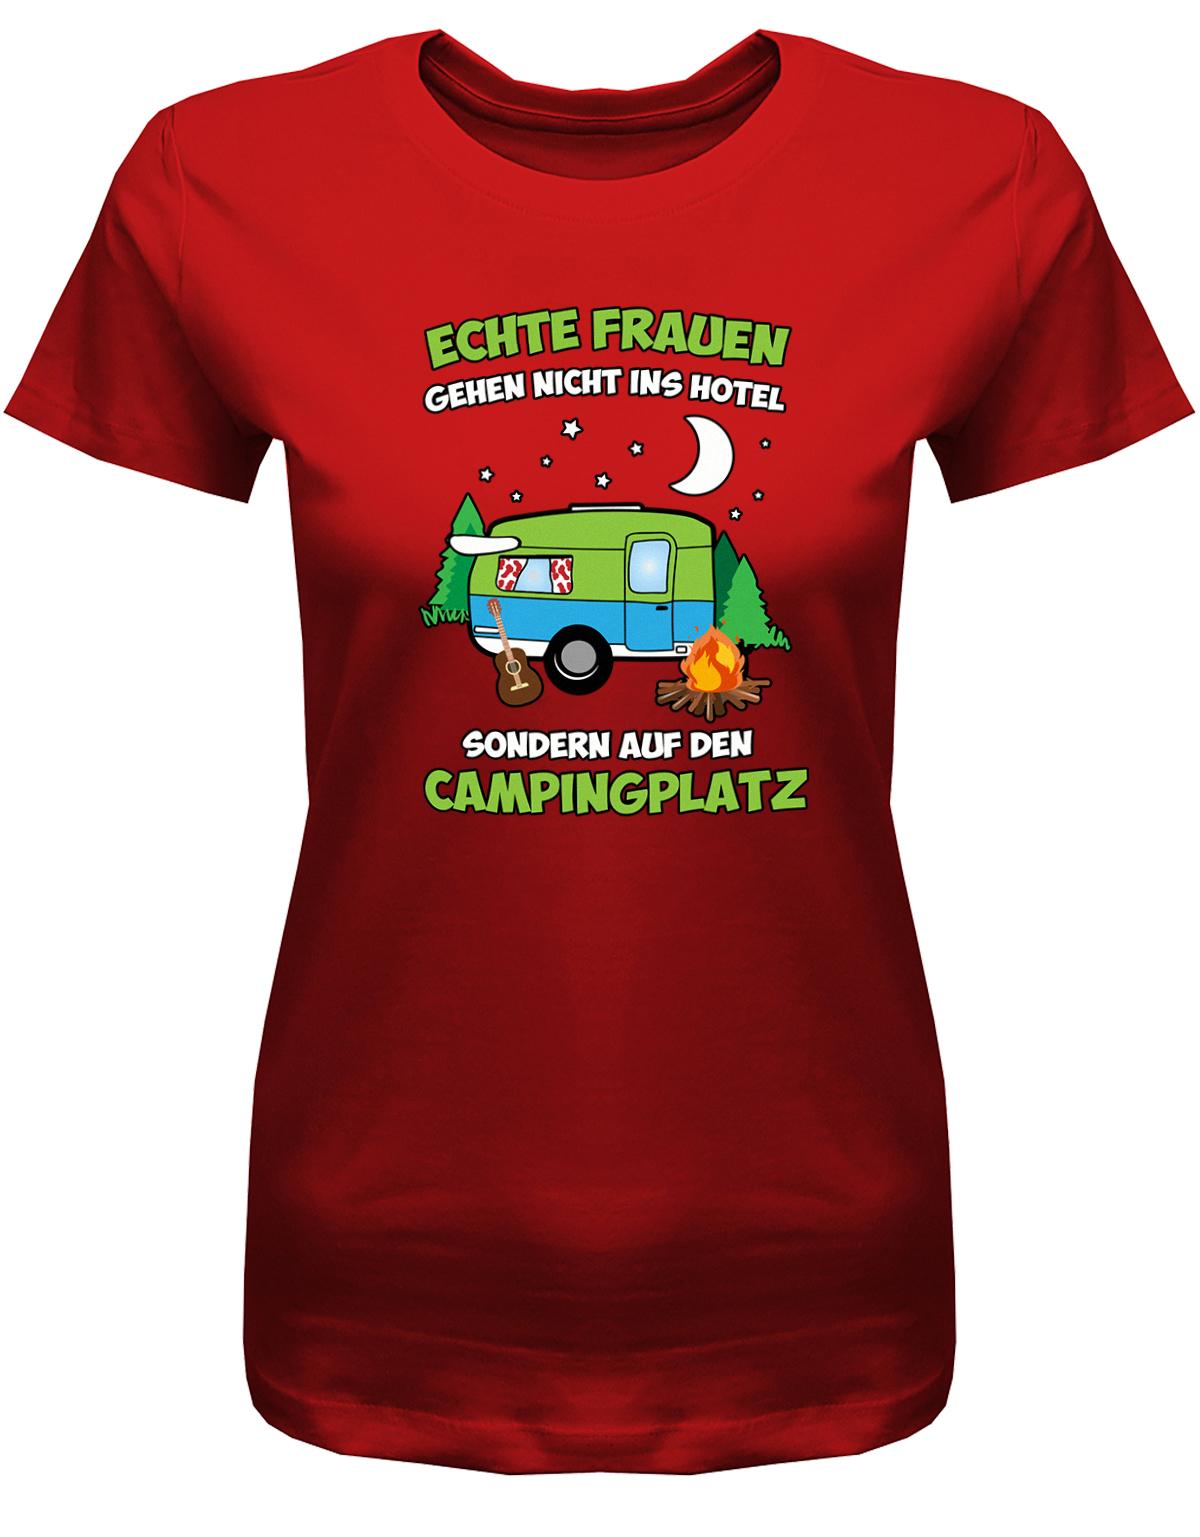 Echte-Frauen-gehen-nicht-ins-Hotel-sondern-aufn-Campingplatz-Damen-Shirt-rot